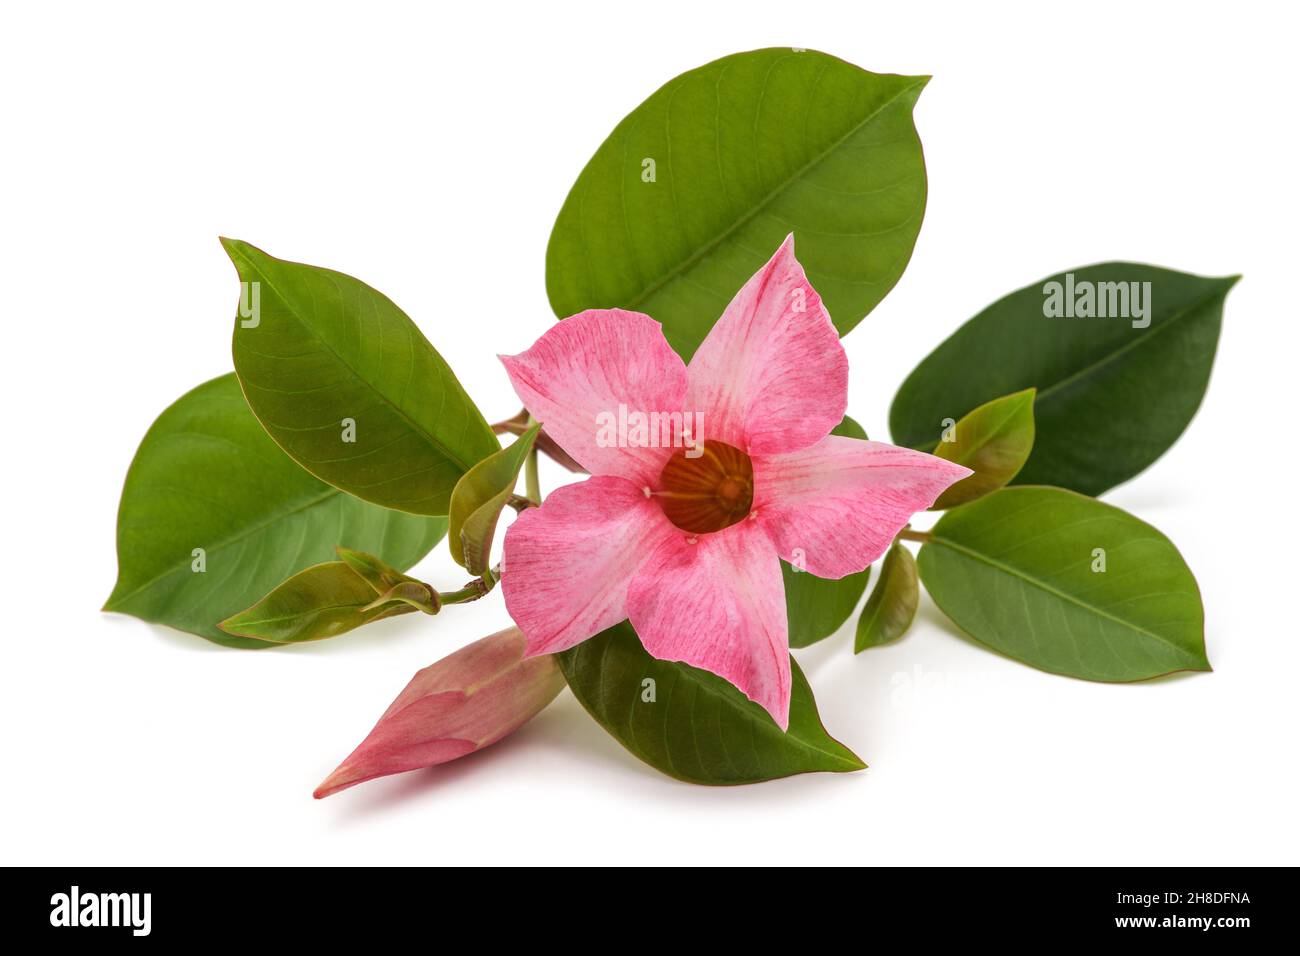 Fleur de mandevilla rose isolée sur fond blanc Banque D'Images